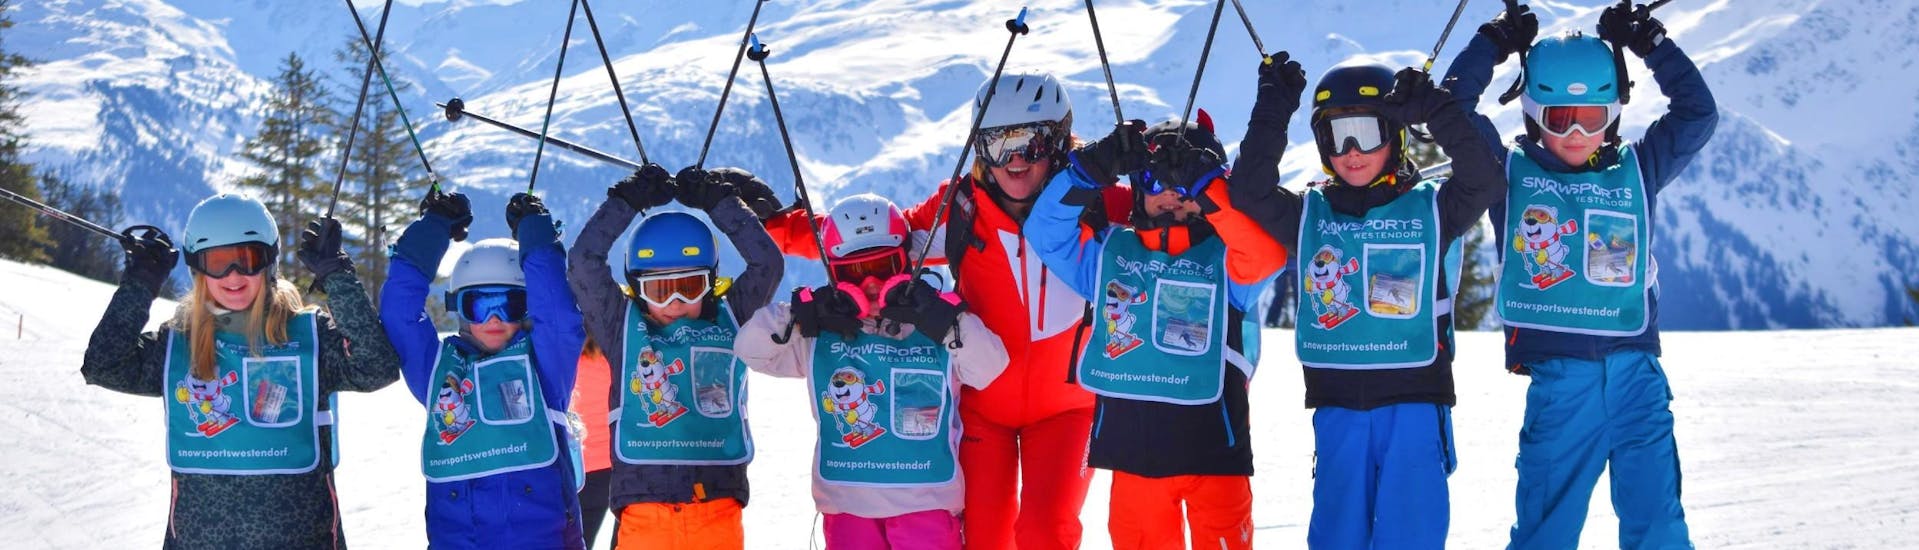 Eine Gruppe von Kindern jubelt während des Kinder-Skikurses (5-14 J.) für alle Levels mit der Skischule Snowsports Westendorf.